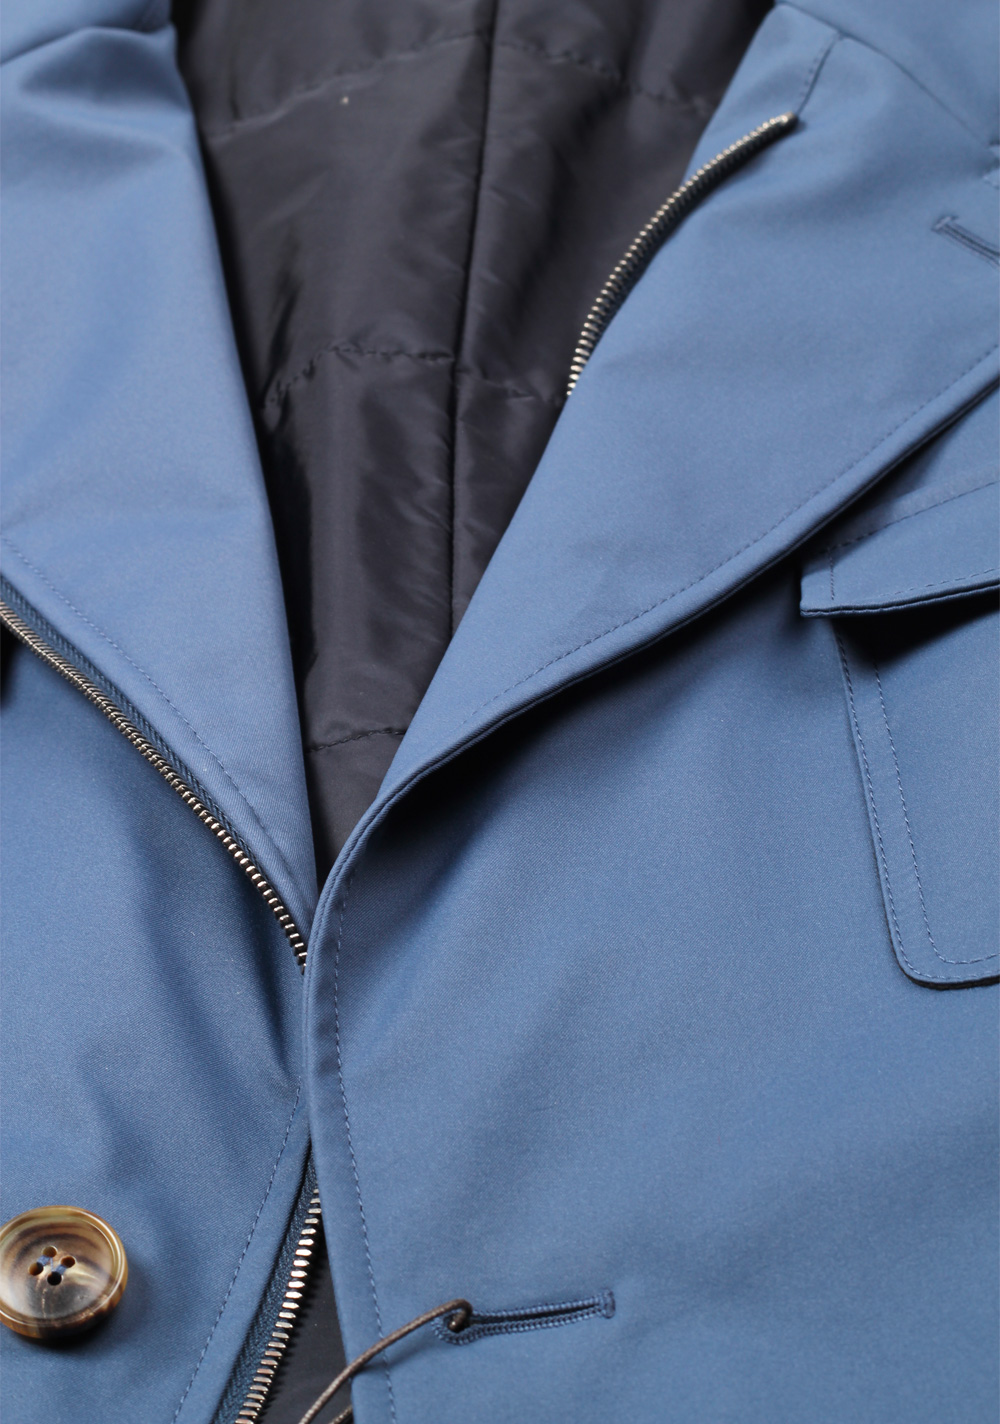 Gucci Blue Rain Coat Size 58 / 48R U.S. | Costume Limité